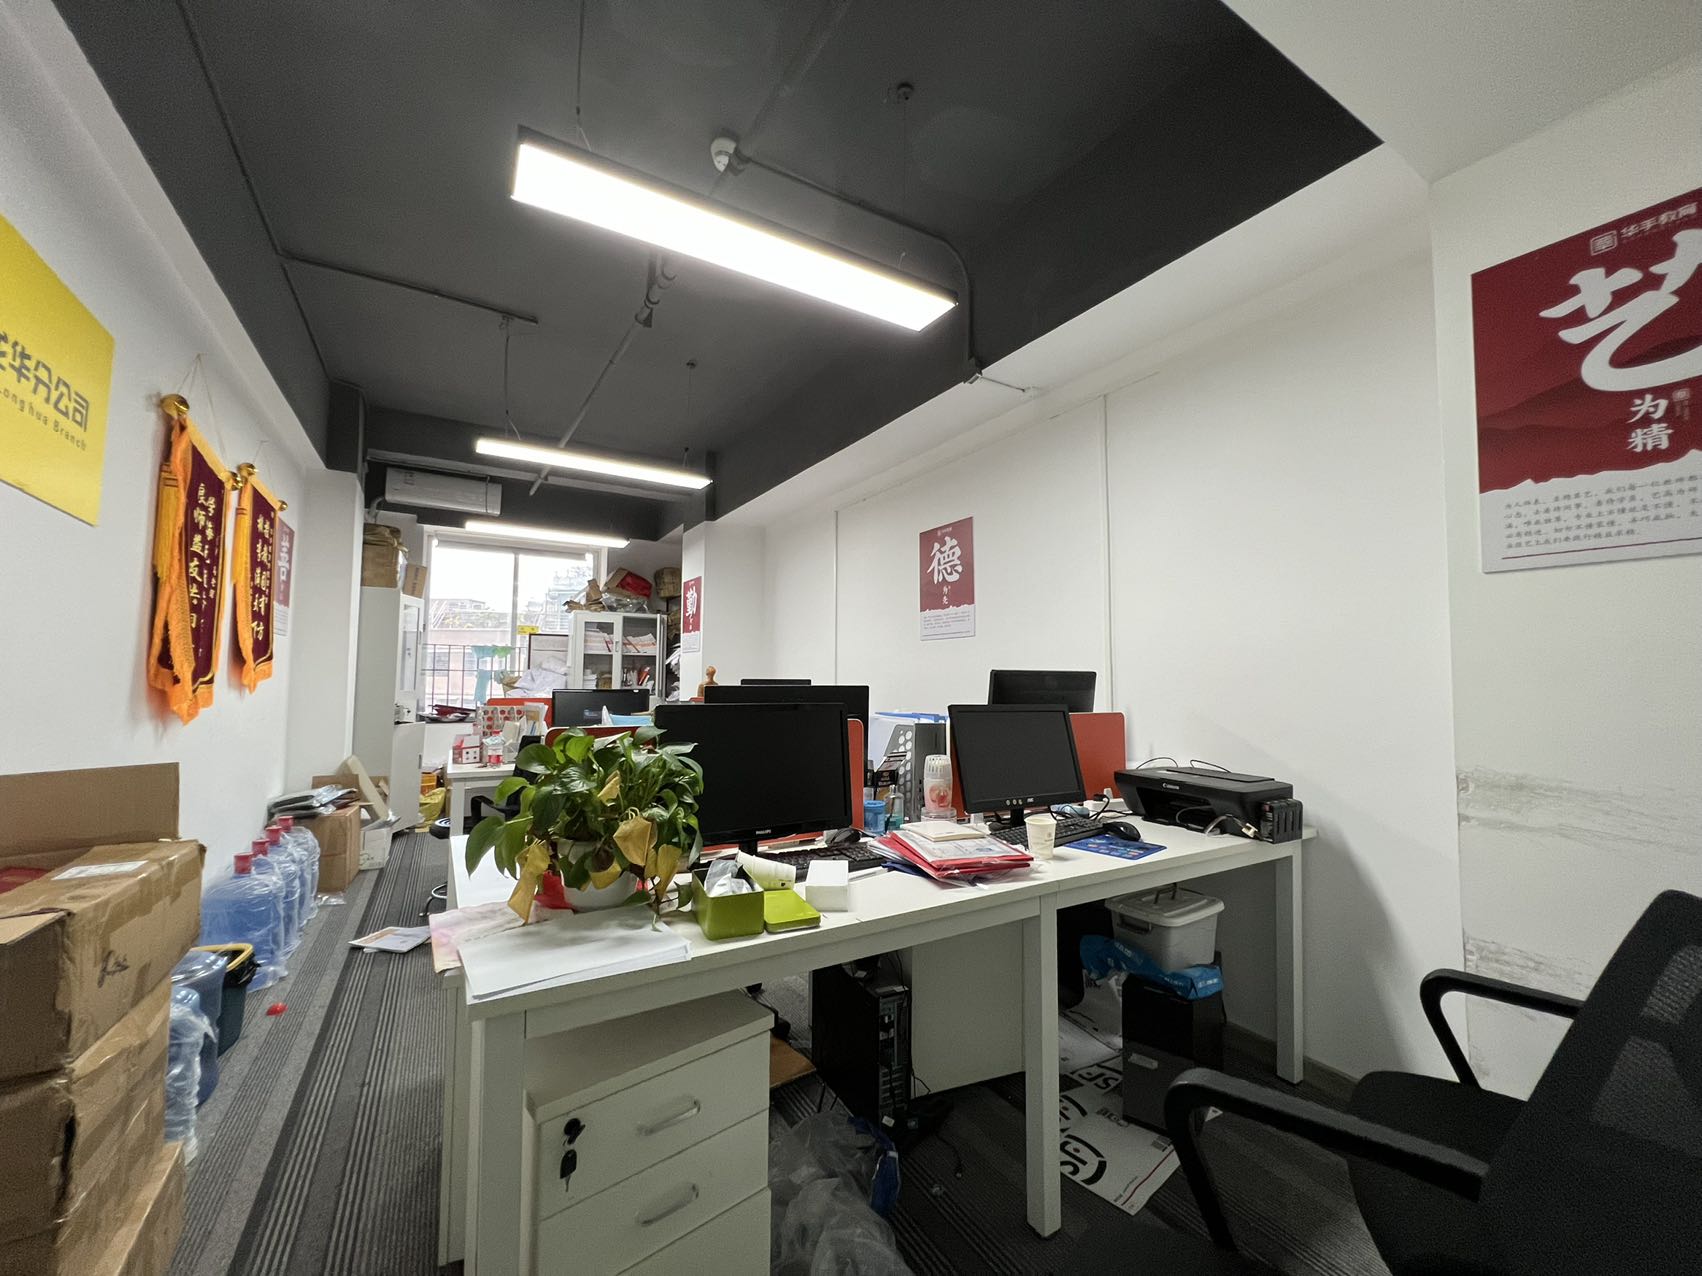 龙华清湖地铁站附近新出一套720平办公室